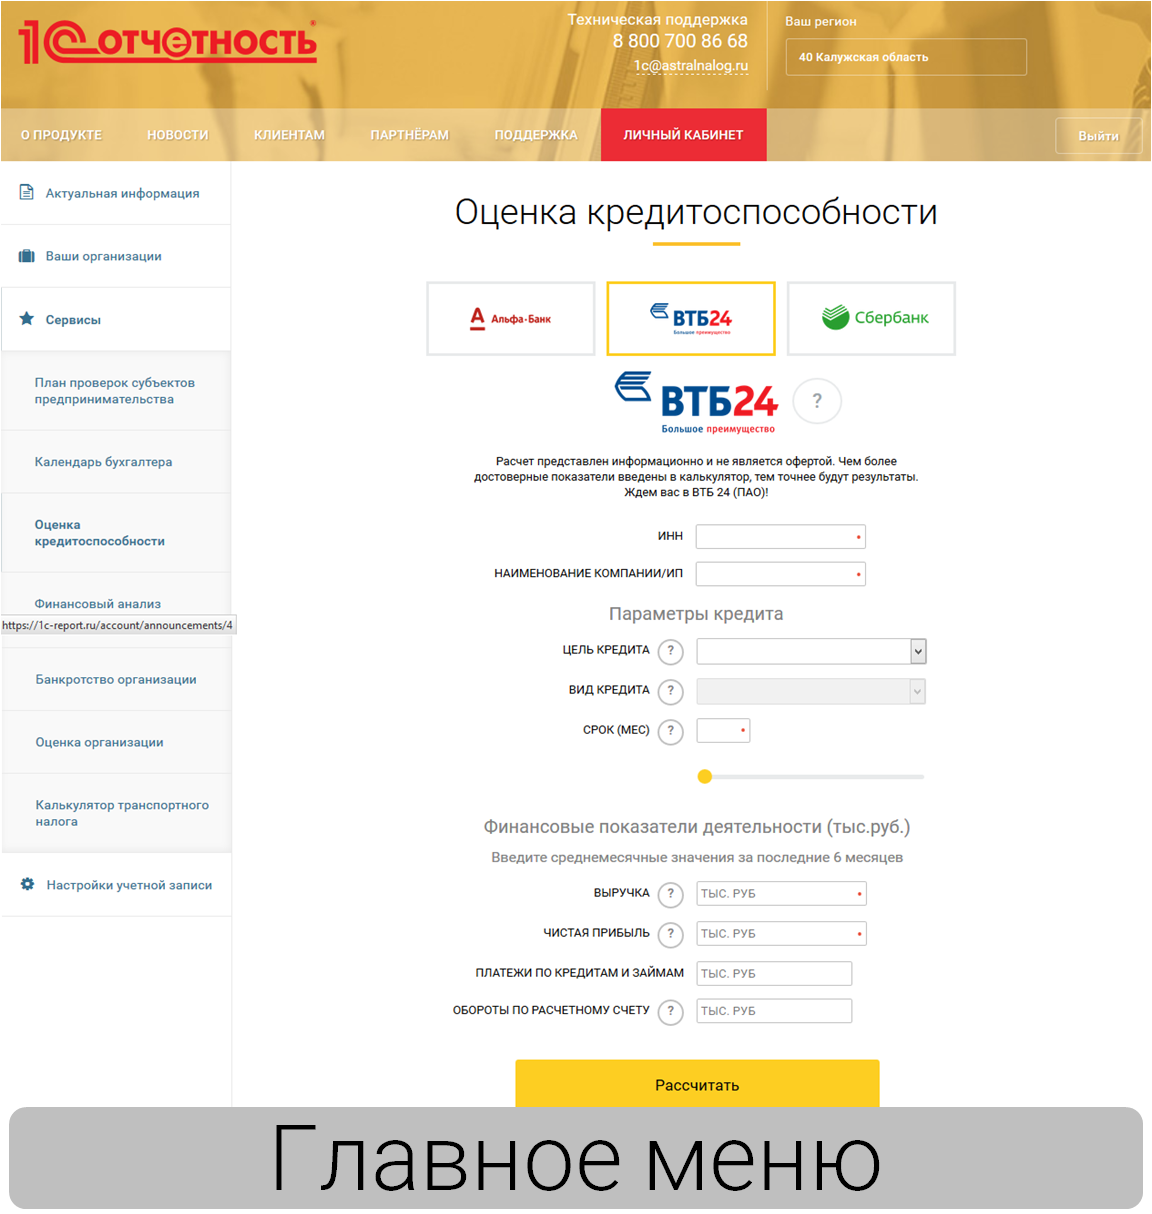 Новый сервис: Кредитный калькулятор ВТБ24 (ПАО)!